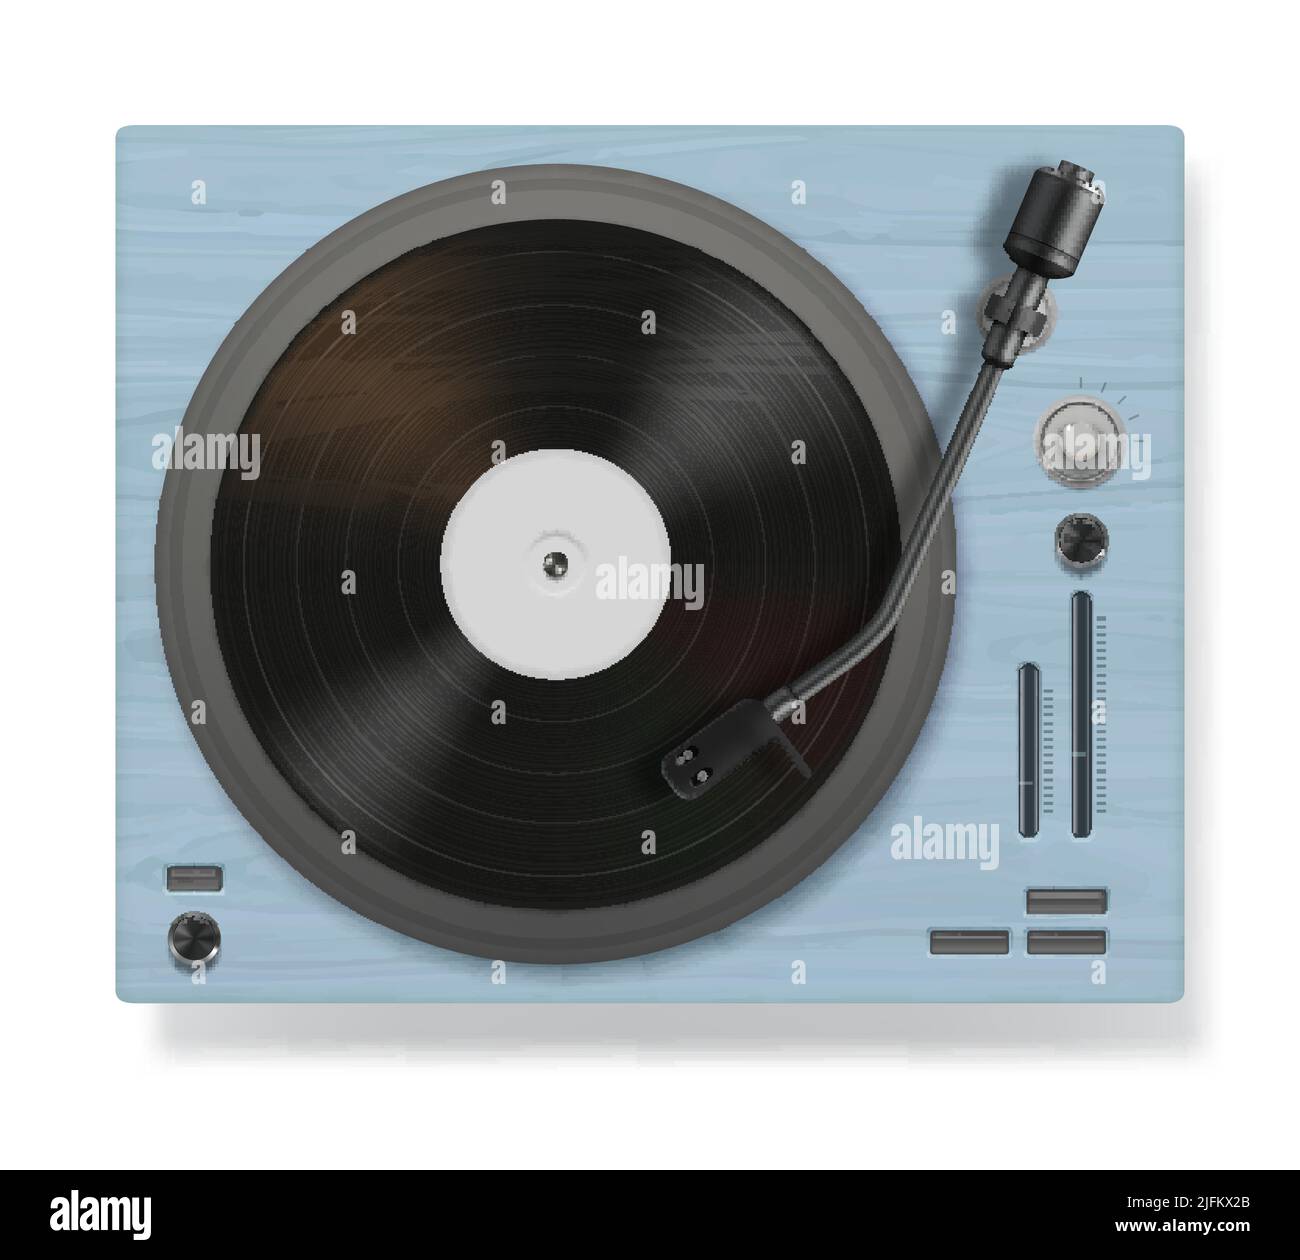 Grabadora de vinilo. DJ materia de música vintage realista phonograph tocadiscos tocadiscos equipo de sonido decente vector plantillas Ilustración del Vector